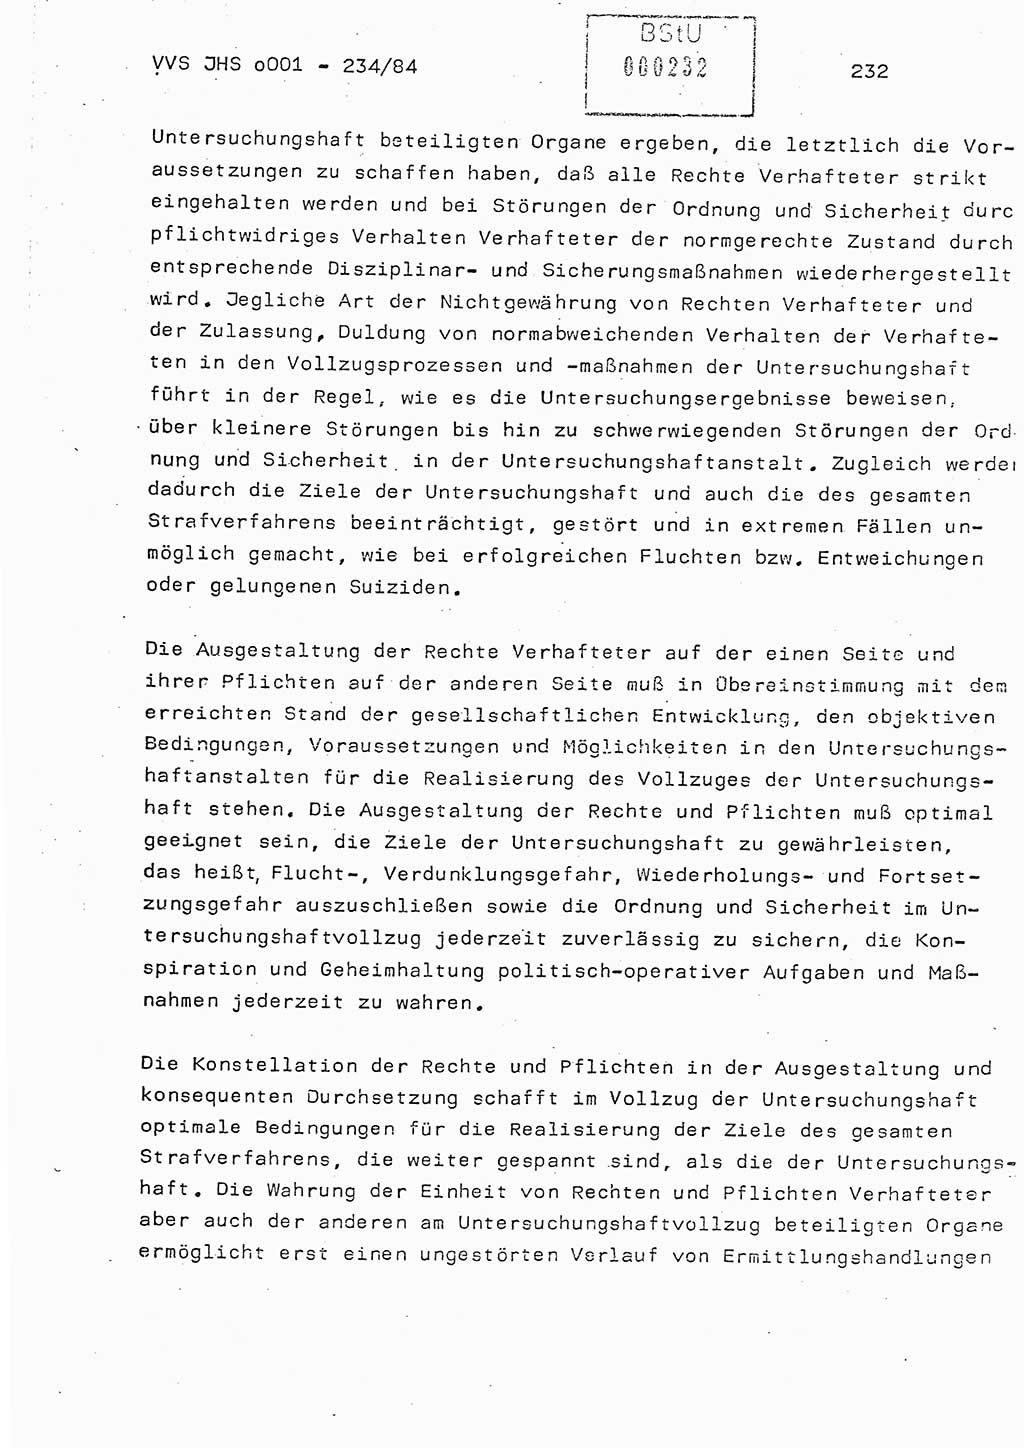 Dissertation Oberst Siegfried Rataizick (Abt. ⅩⅣ), Oberstleutnant Volkmar Heinz (Abt. ⅩⅣ), Oberstleutnant Werner Stein (HA Ⅸ), Hauptmann Heinz Conrad (JHS), Ministerium für Staatssicherheit (MfS) [Deutsche Demokratische Republik (DDR)], Juristische Hochschule (JHS), Vertrauliche Verschlußsache (VVS) o001-234/84, Potsdam 1984, Seite 232 (Diss. MfS DDR JHS VVS o001-234/84 1984, S. 232)